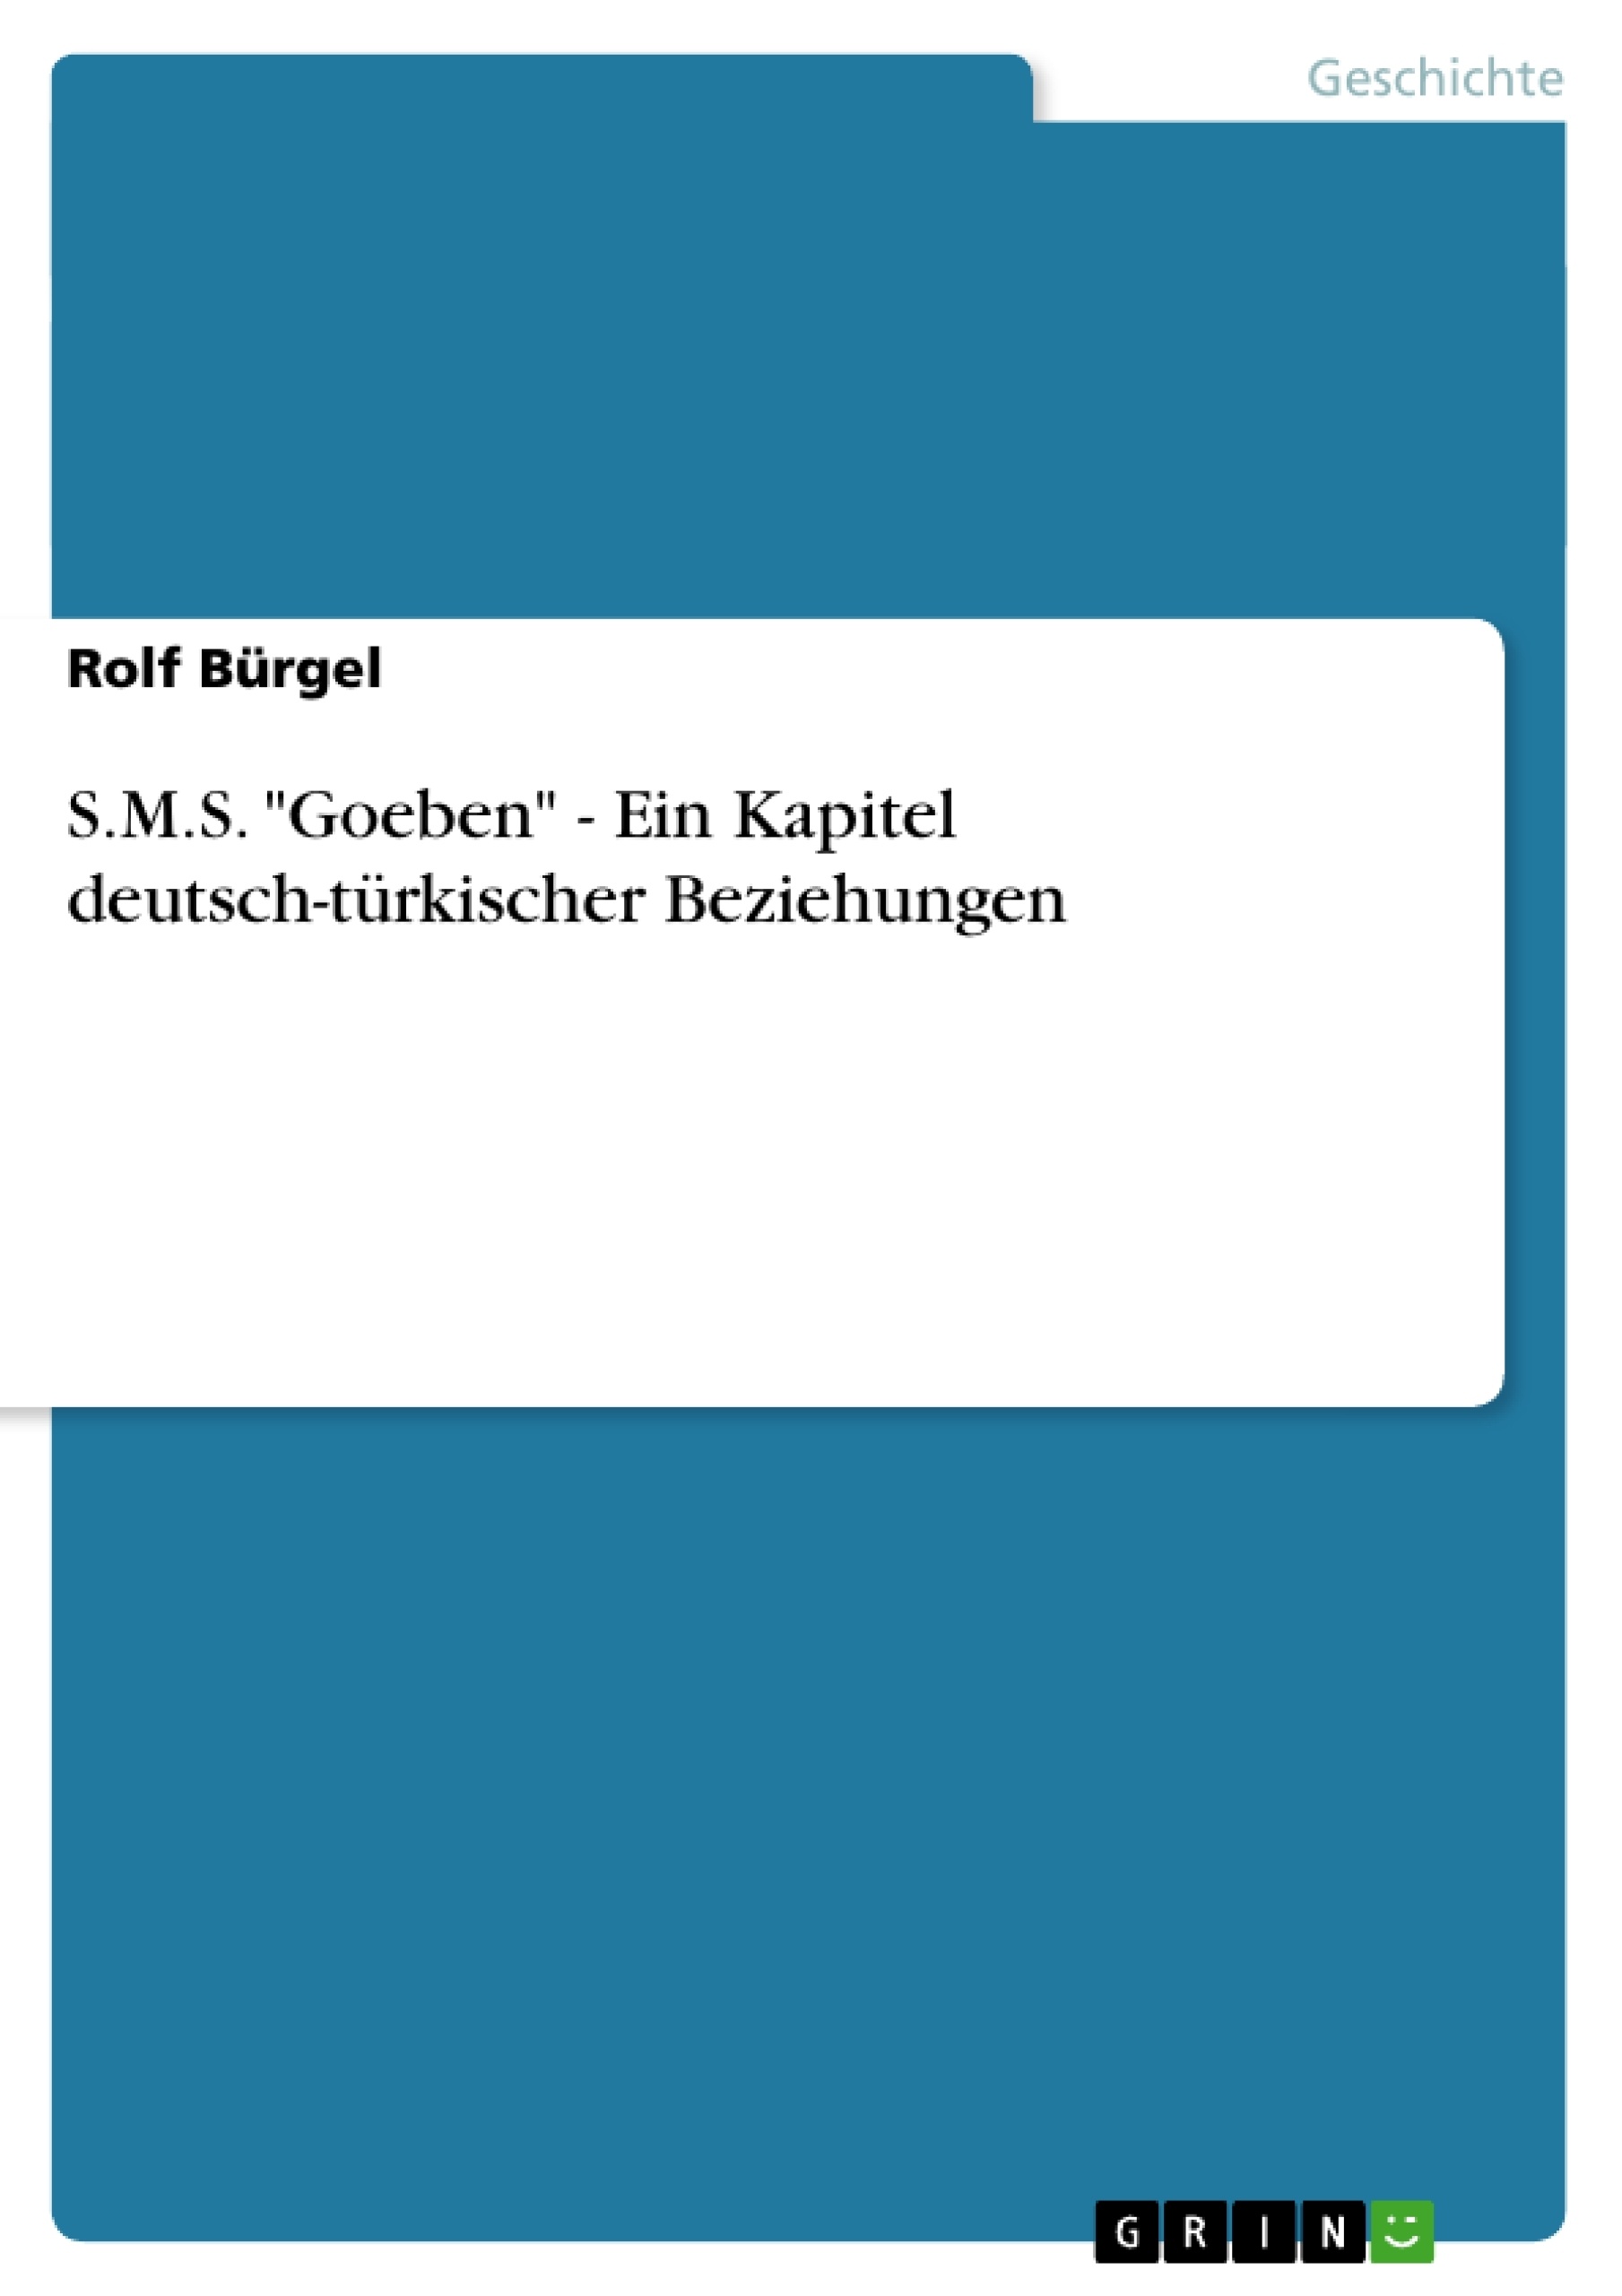 Titel: S.M.S. "Goeben" - Ein Kapitel deutsch-türkischer Beziehungen